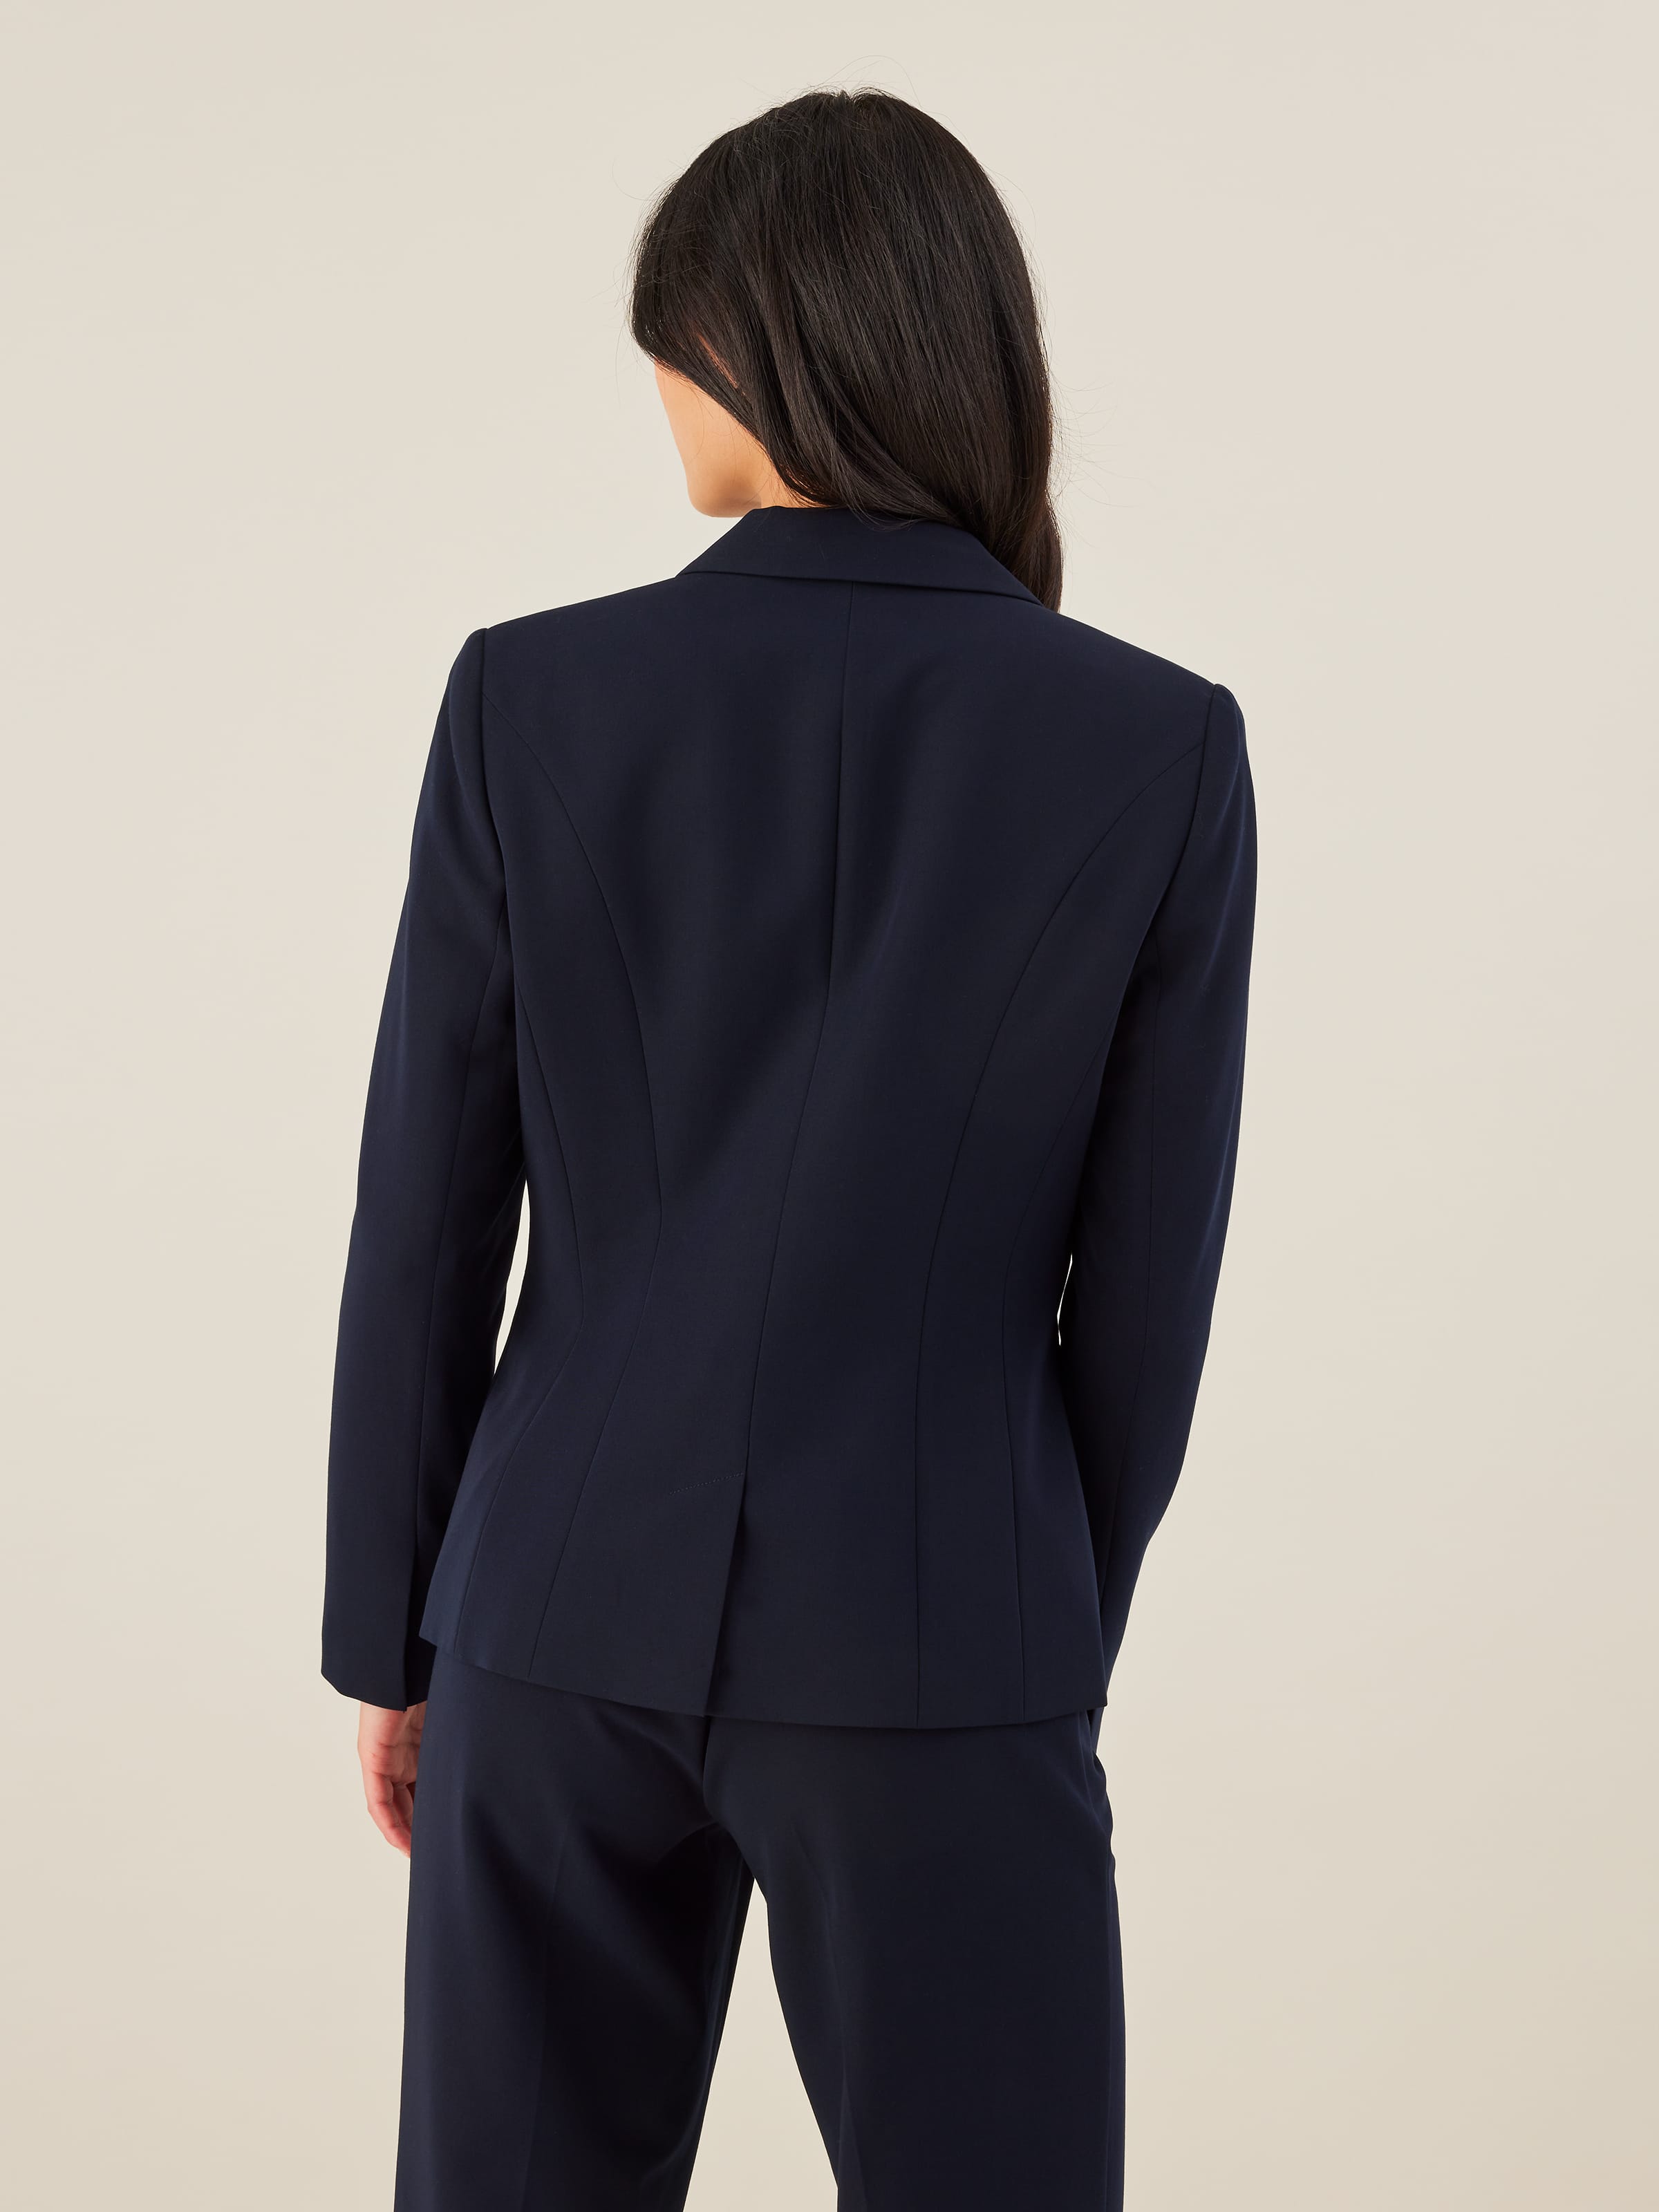 Womens Suits Online 5 Best Websites Buy a Suit for Women  Marie Claire  Australia